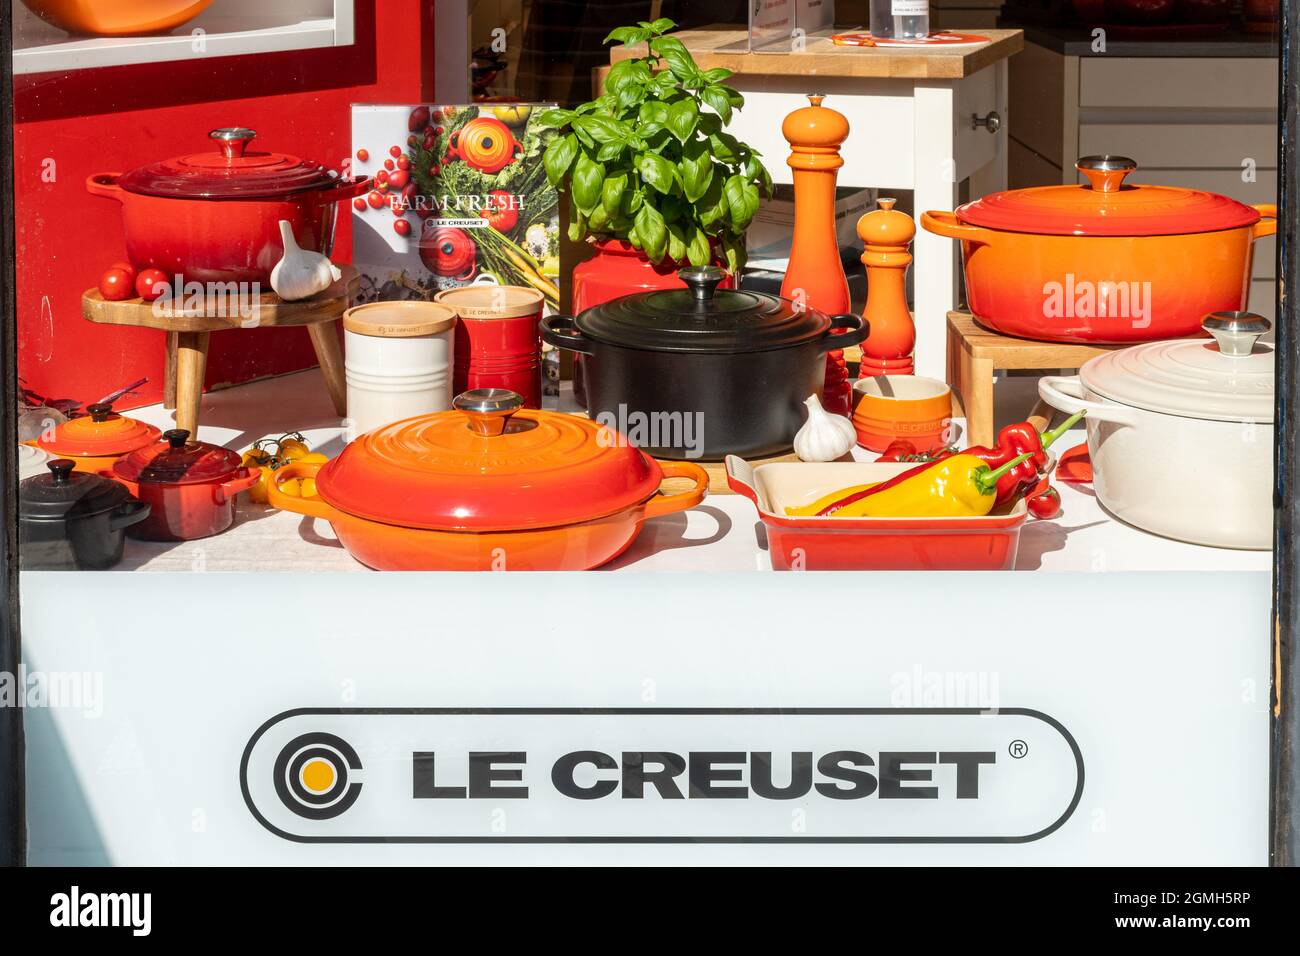 Le Creuset ventana en la tienda o frente a la tienda, minorista francés de  utensilios de cocina, más conocido por sus coloridos utensilios de cocina  esmaltados de hierro fundido, Reino Unido Fotografía